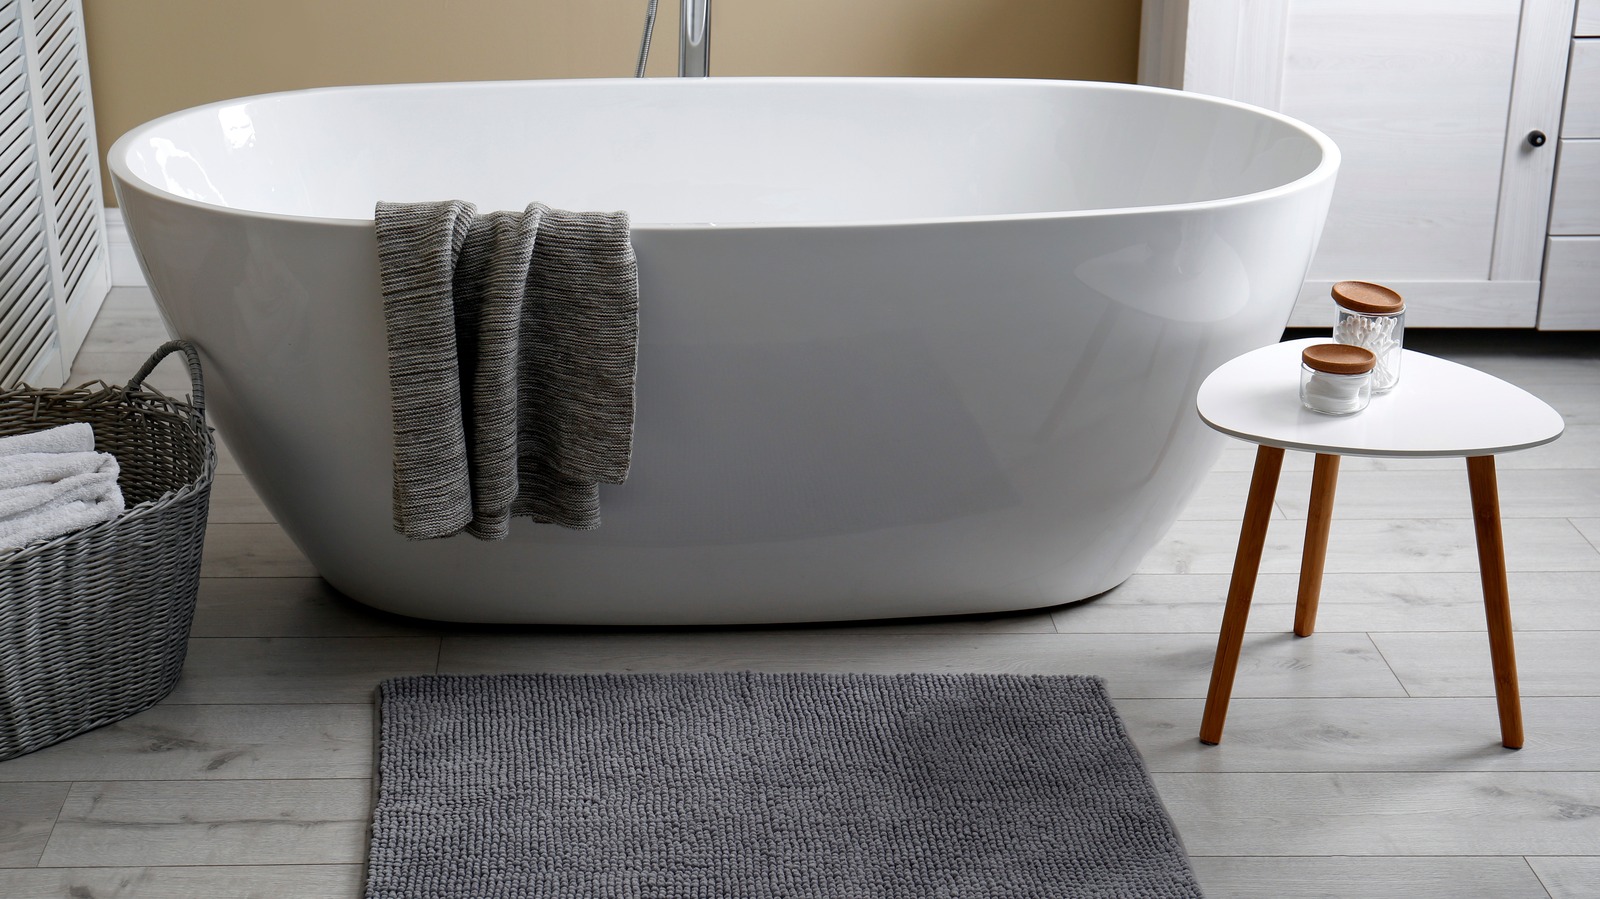 Bath Mat for Refinished Bath Tub